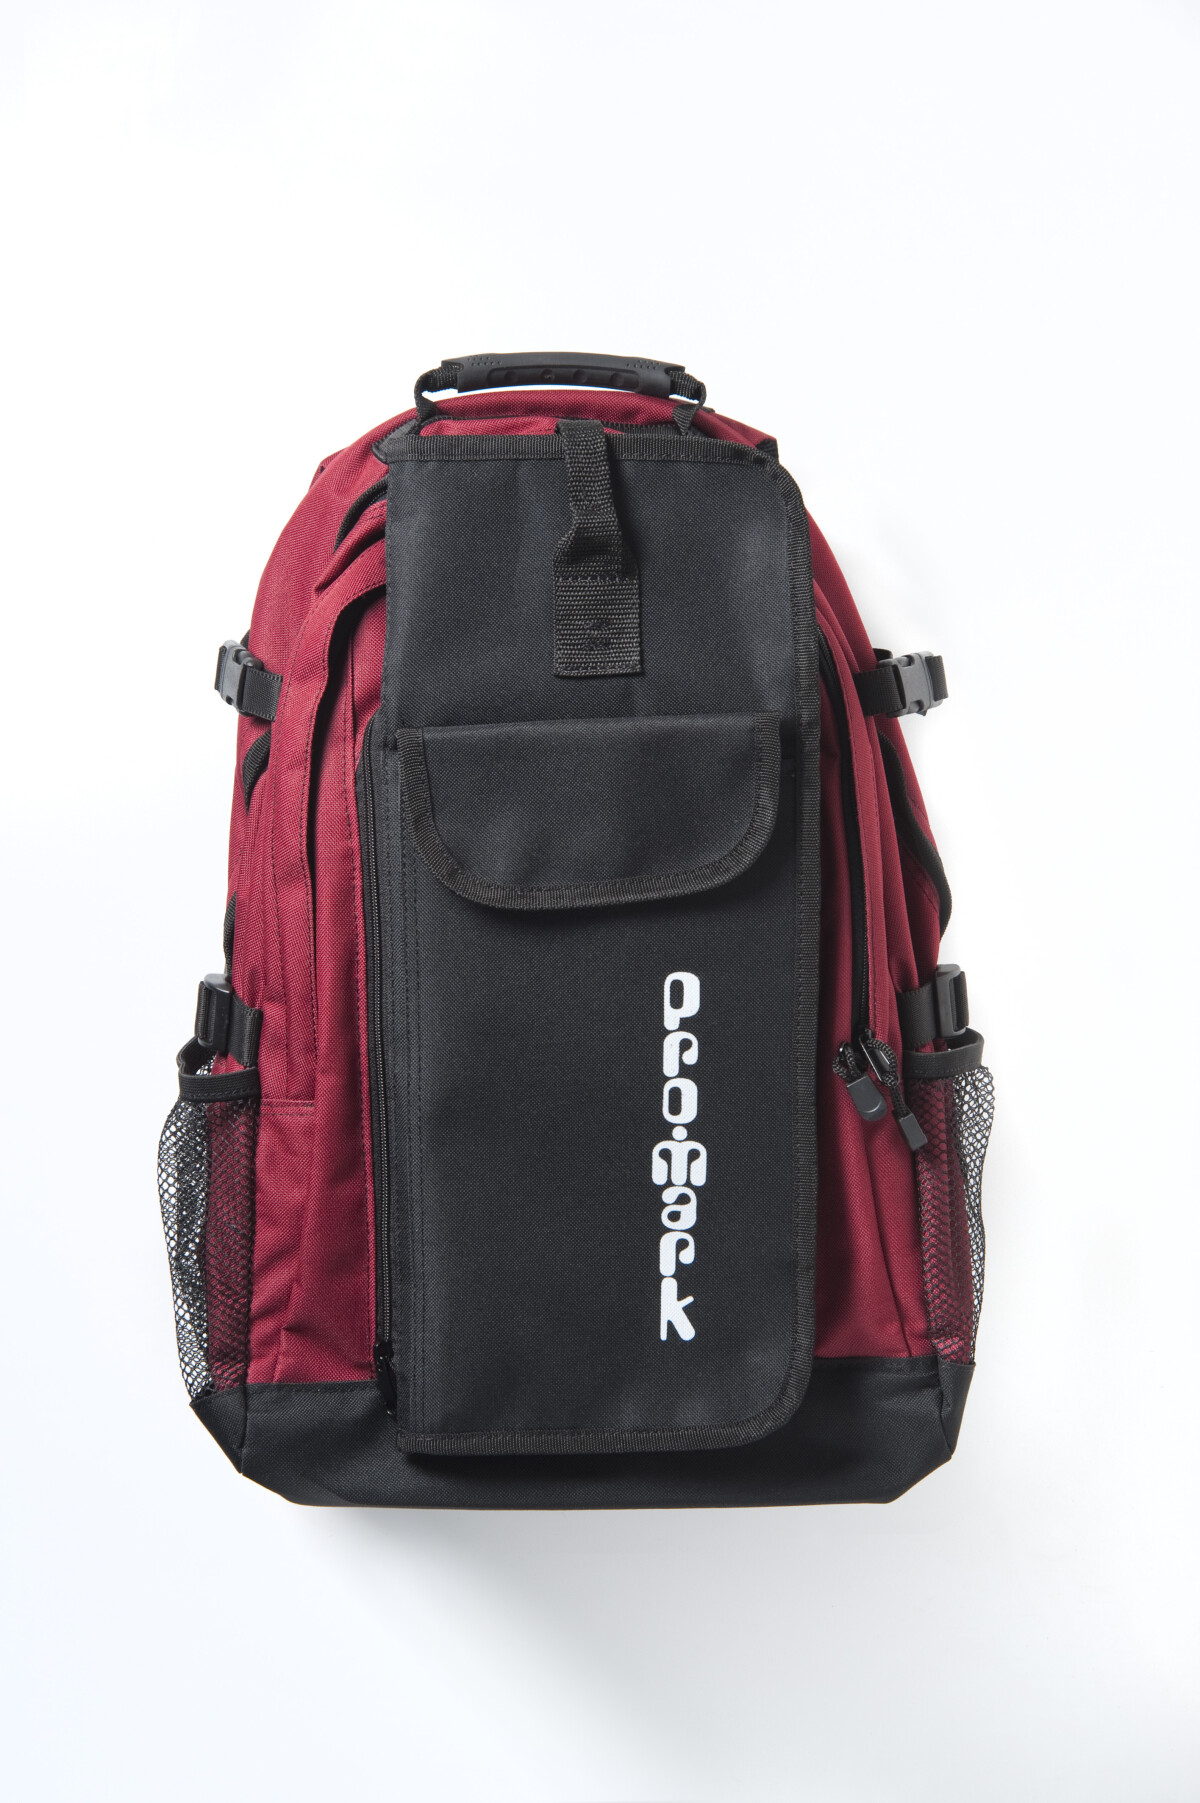 [NAMM] Pro Mark BP 1 Backpack